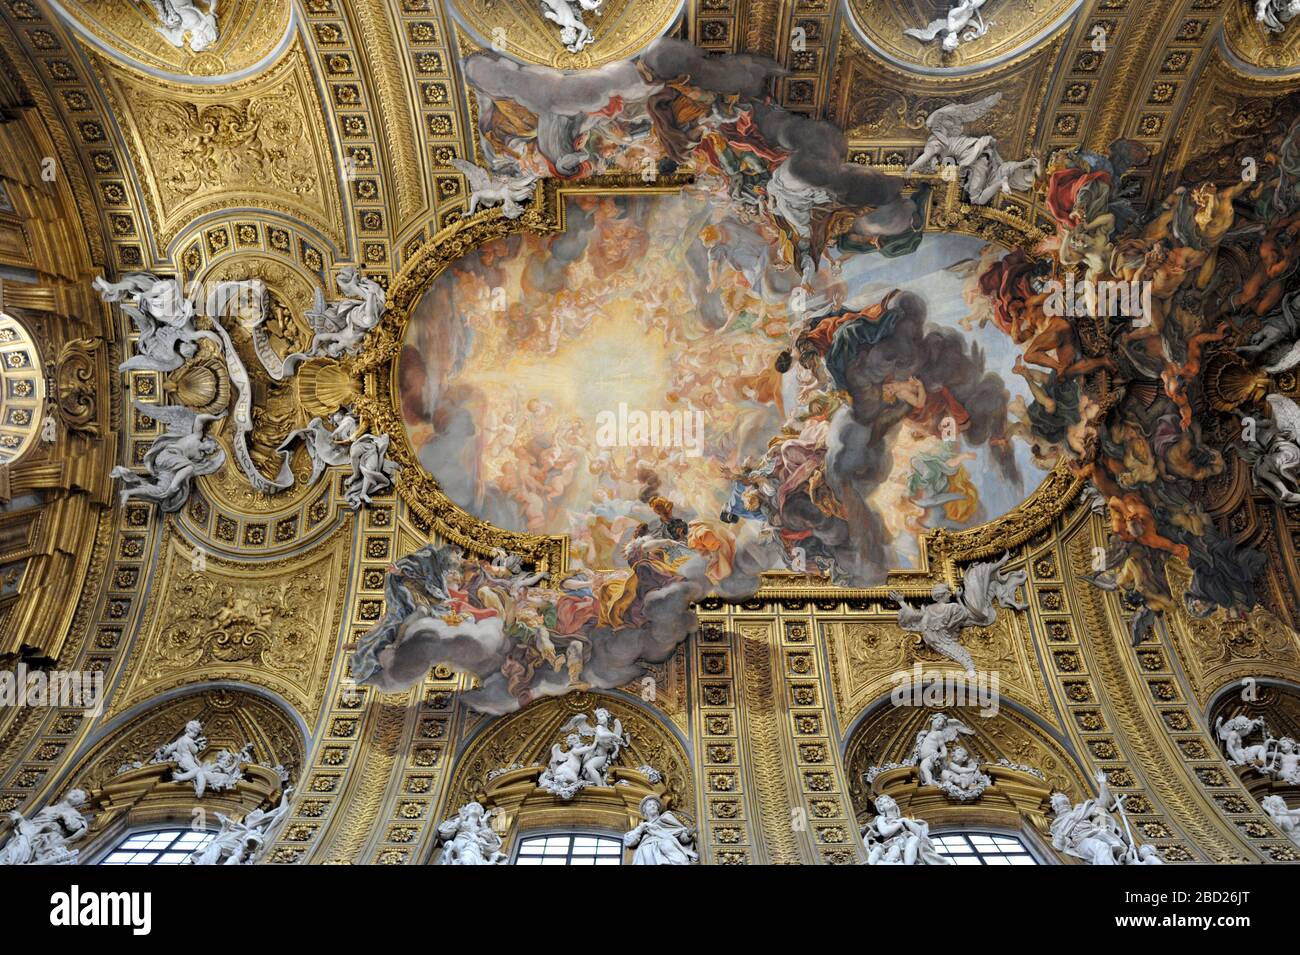 Italy, Rome, Chiesa del Gesù (church of Jesus), ceiling painting 'Trionfo del Nome di Gesù' by Giovanni Battista Gaulli, also known as Baciccio Stock Photo